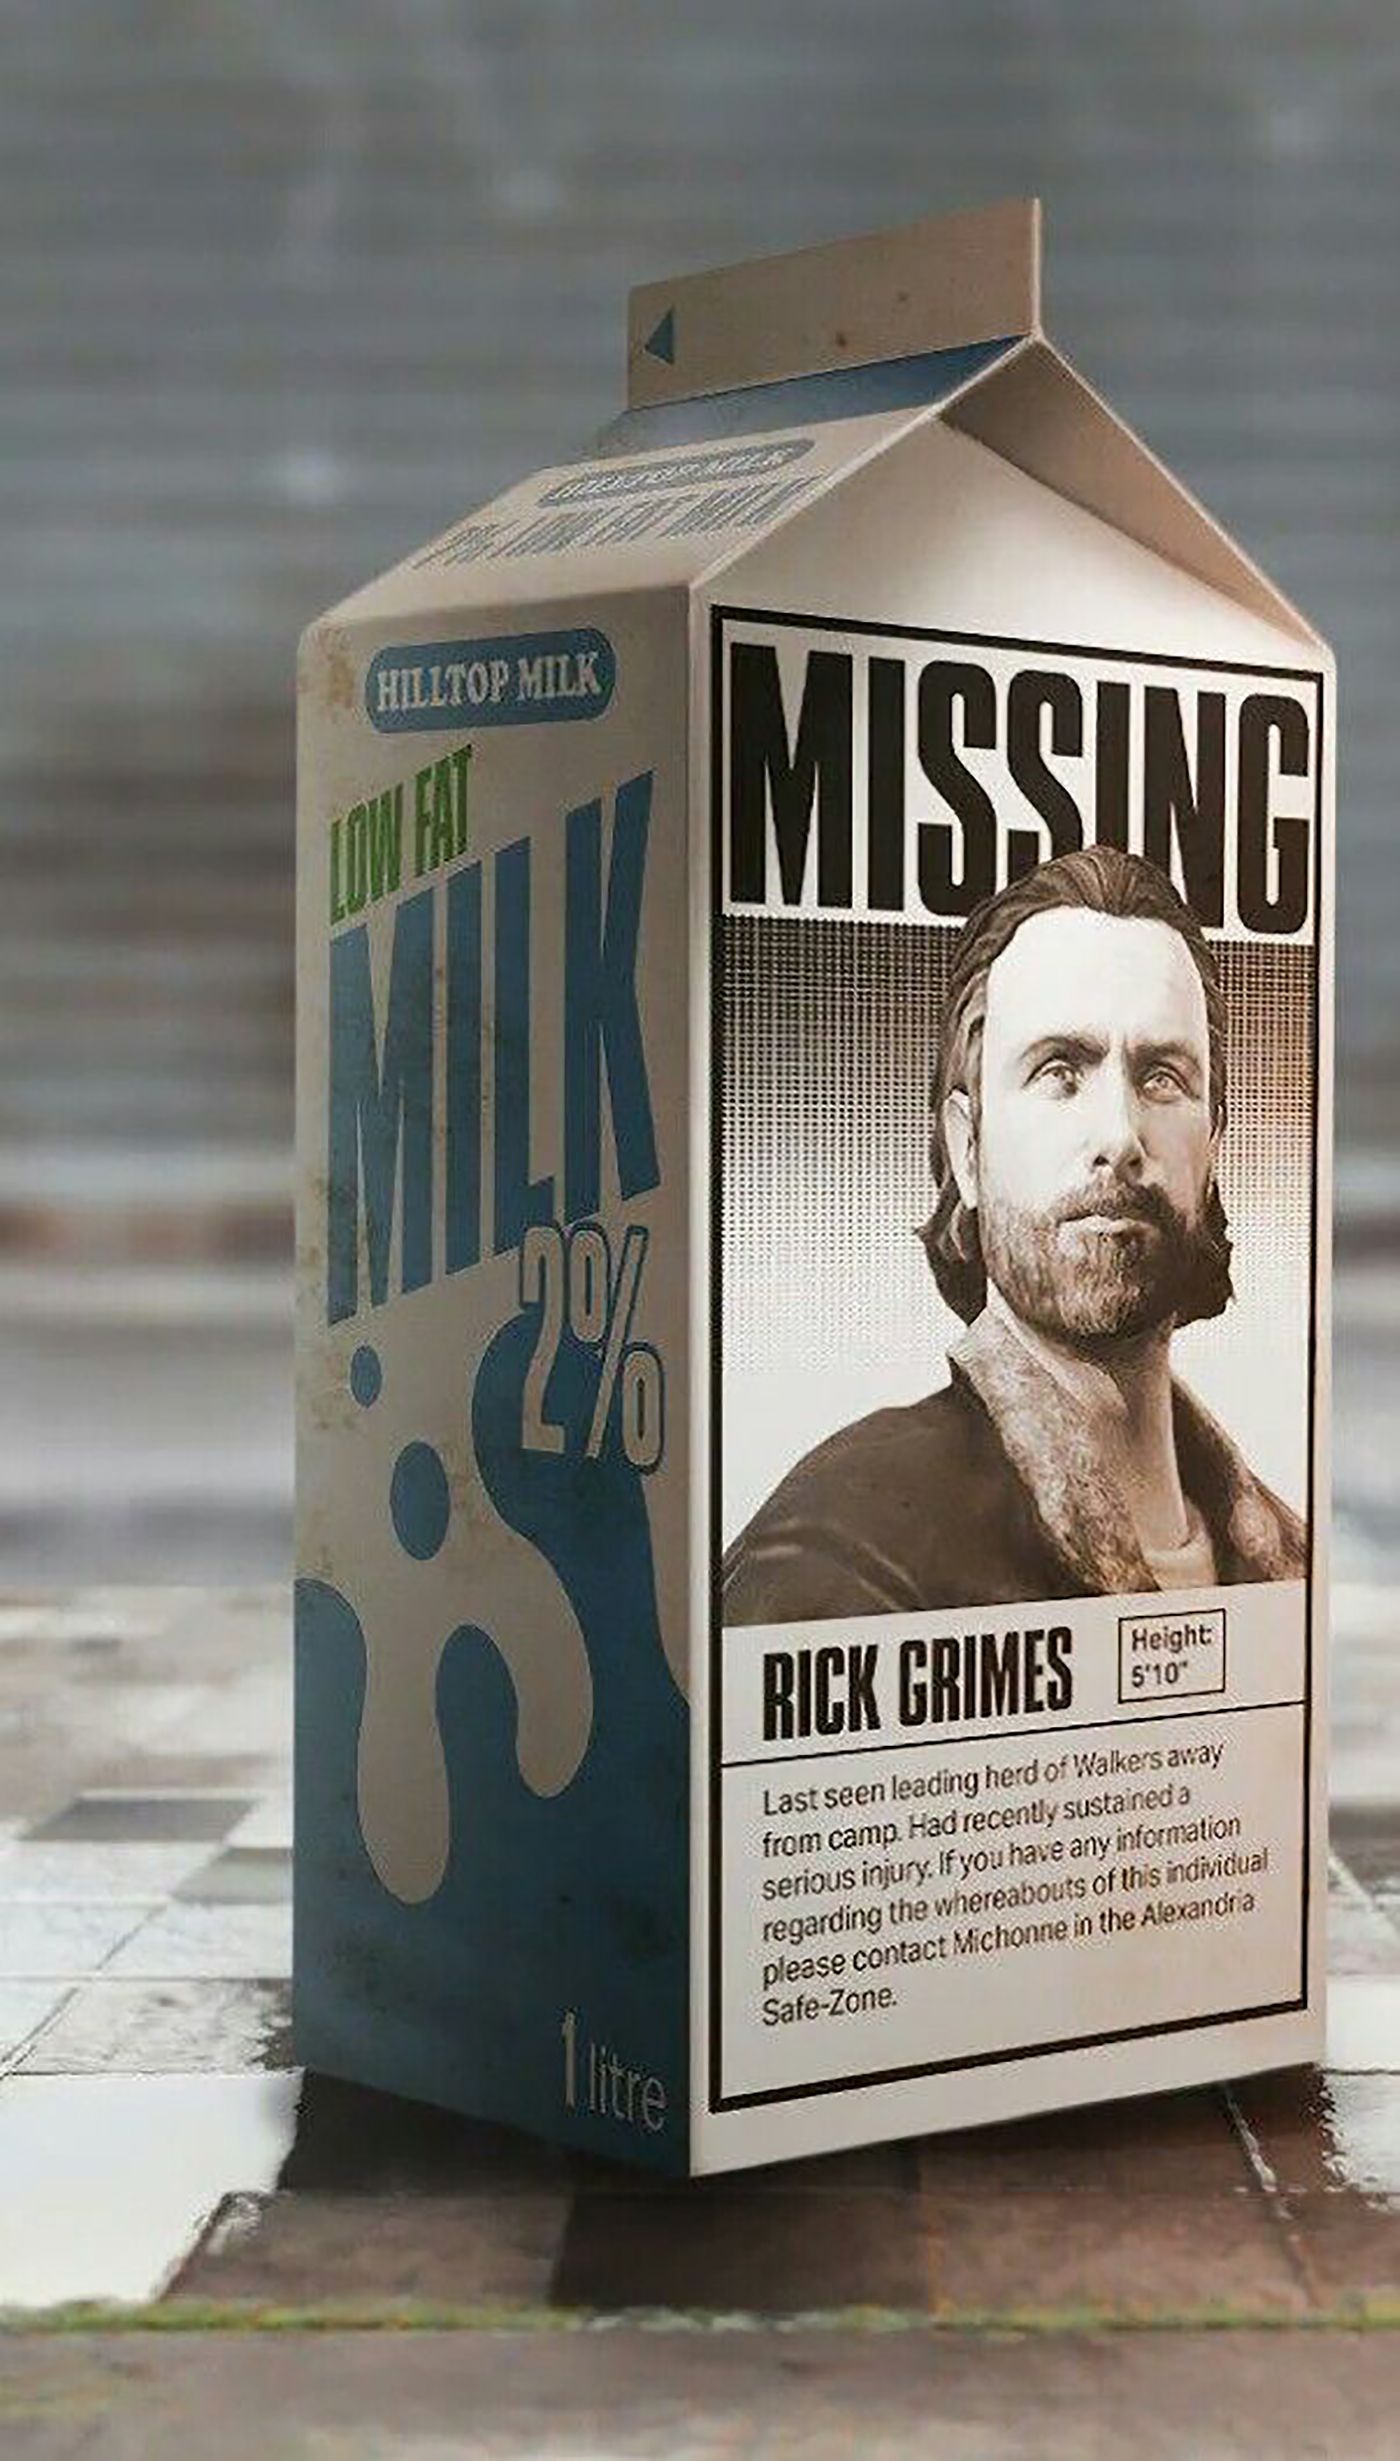 Rick Grimes face on a milk carton in a funny meme.